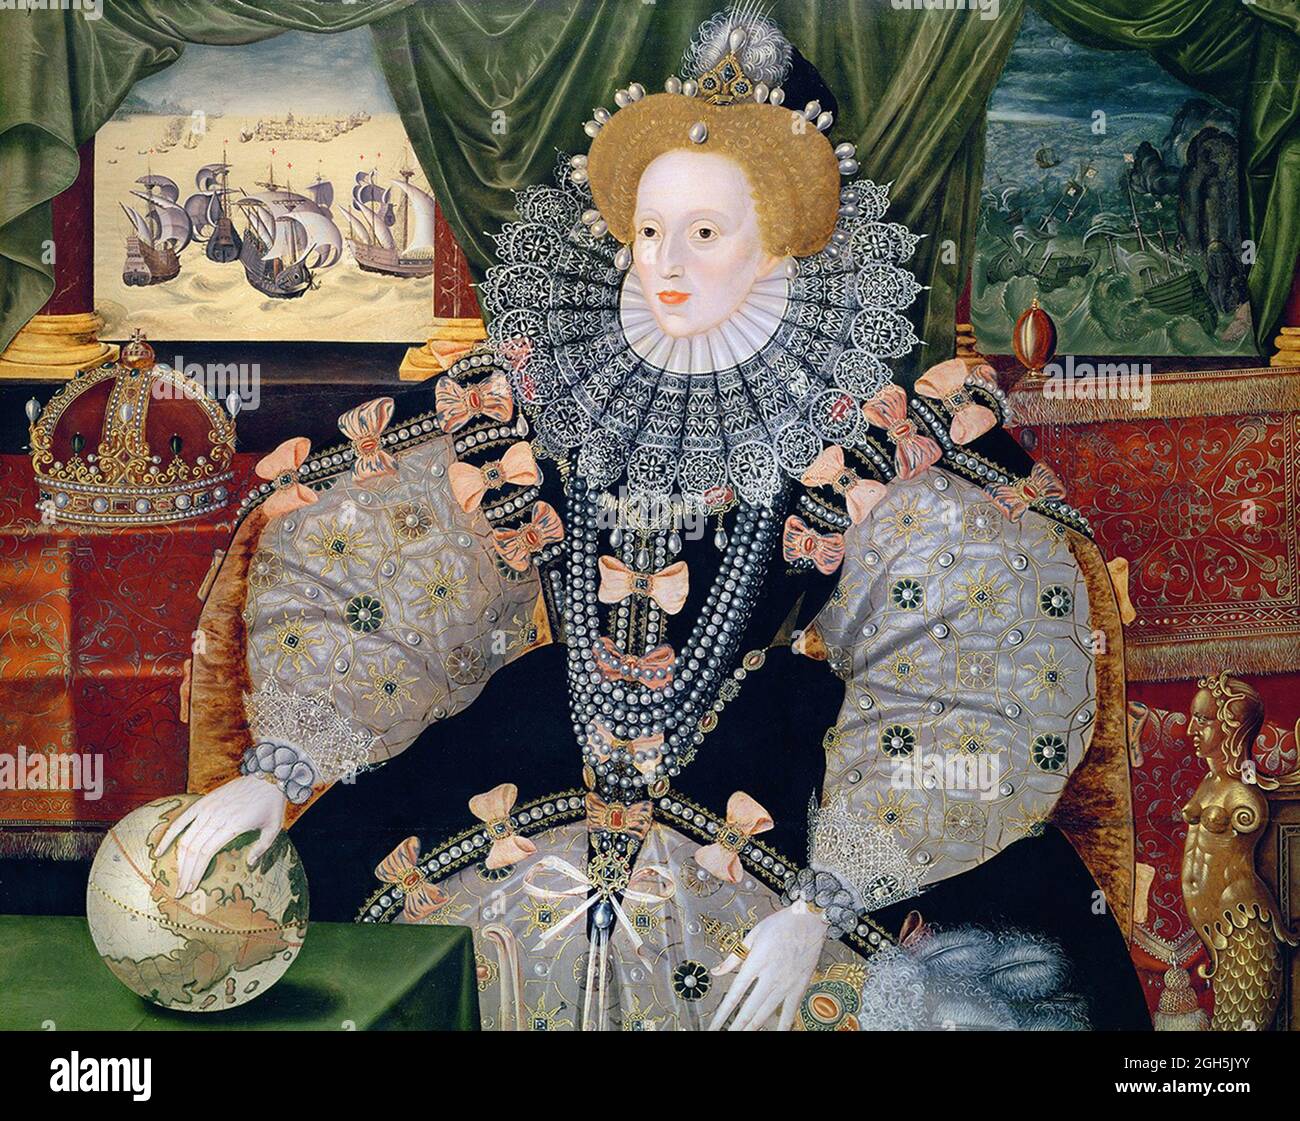 Il 'Ritratto Armada' della Regina Elisabetta i che fu Regina d'Inghilterra dal 1558 al 1603. Questo dipinto commemora la sconfitta dell'Armada spagnola, raffigurata sullo sfondo. La mano di Elisabetta poggia sul globo, simboleggiando il suo potere internazionale. Foto Stock